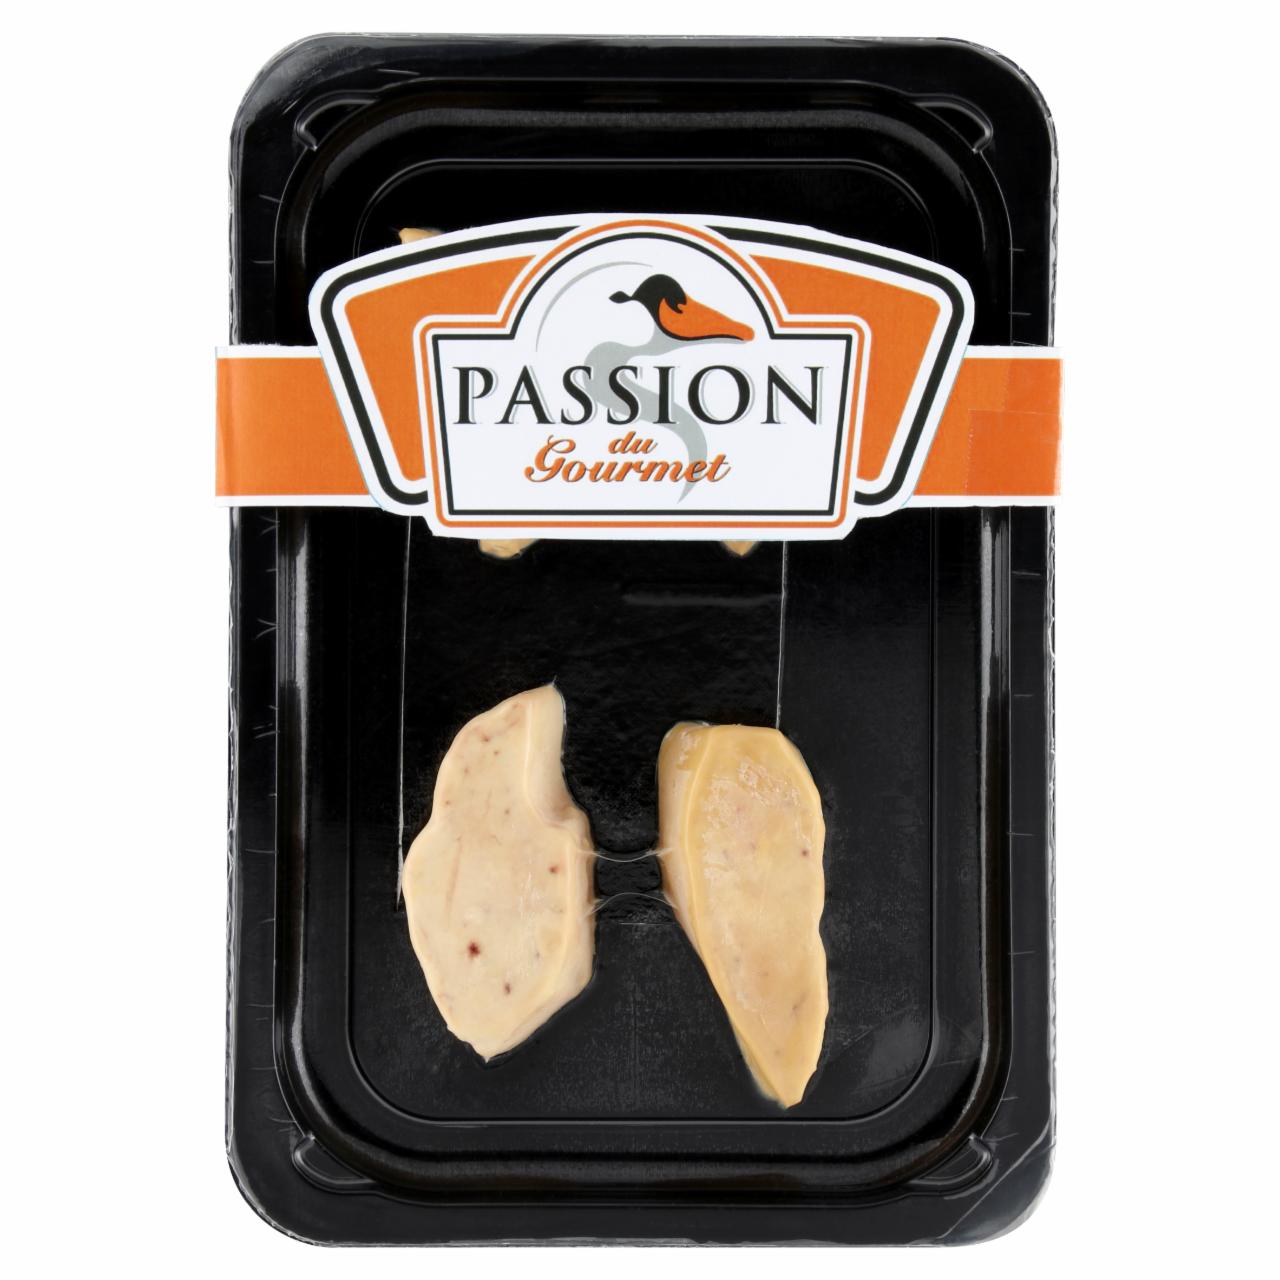 Képek - Passion du Gourmet gyorsfagyasztott hízott libamáj szelet 120 g